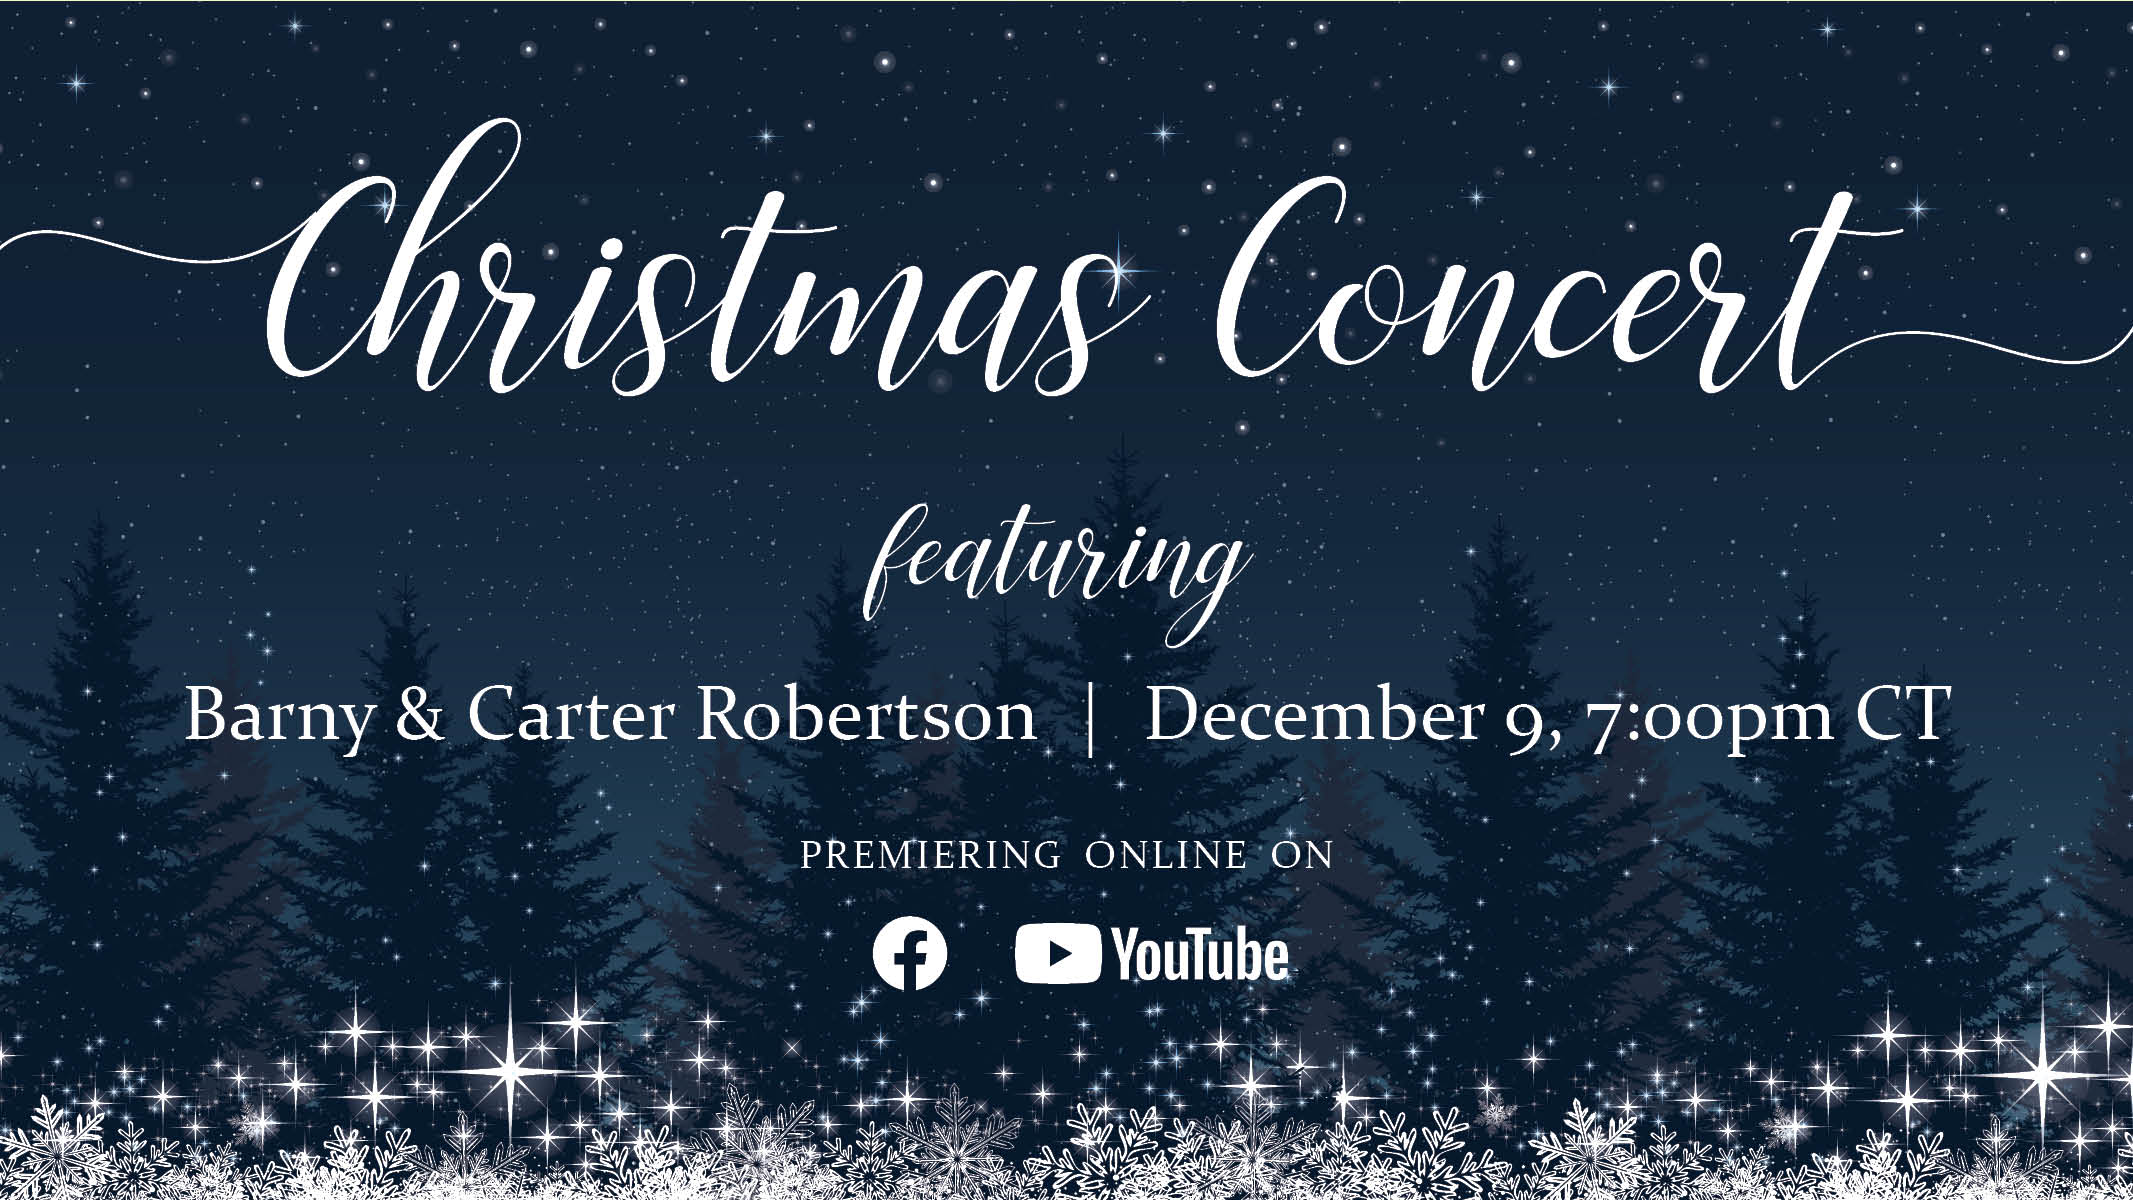 Christmas Concert with Barny & Carter Robertson